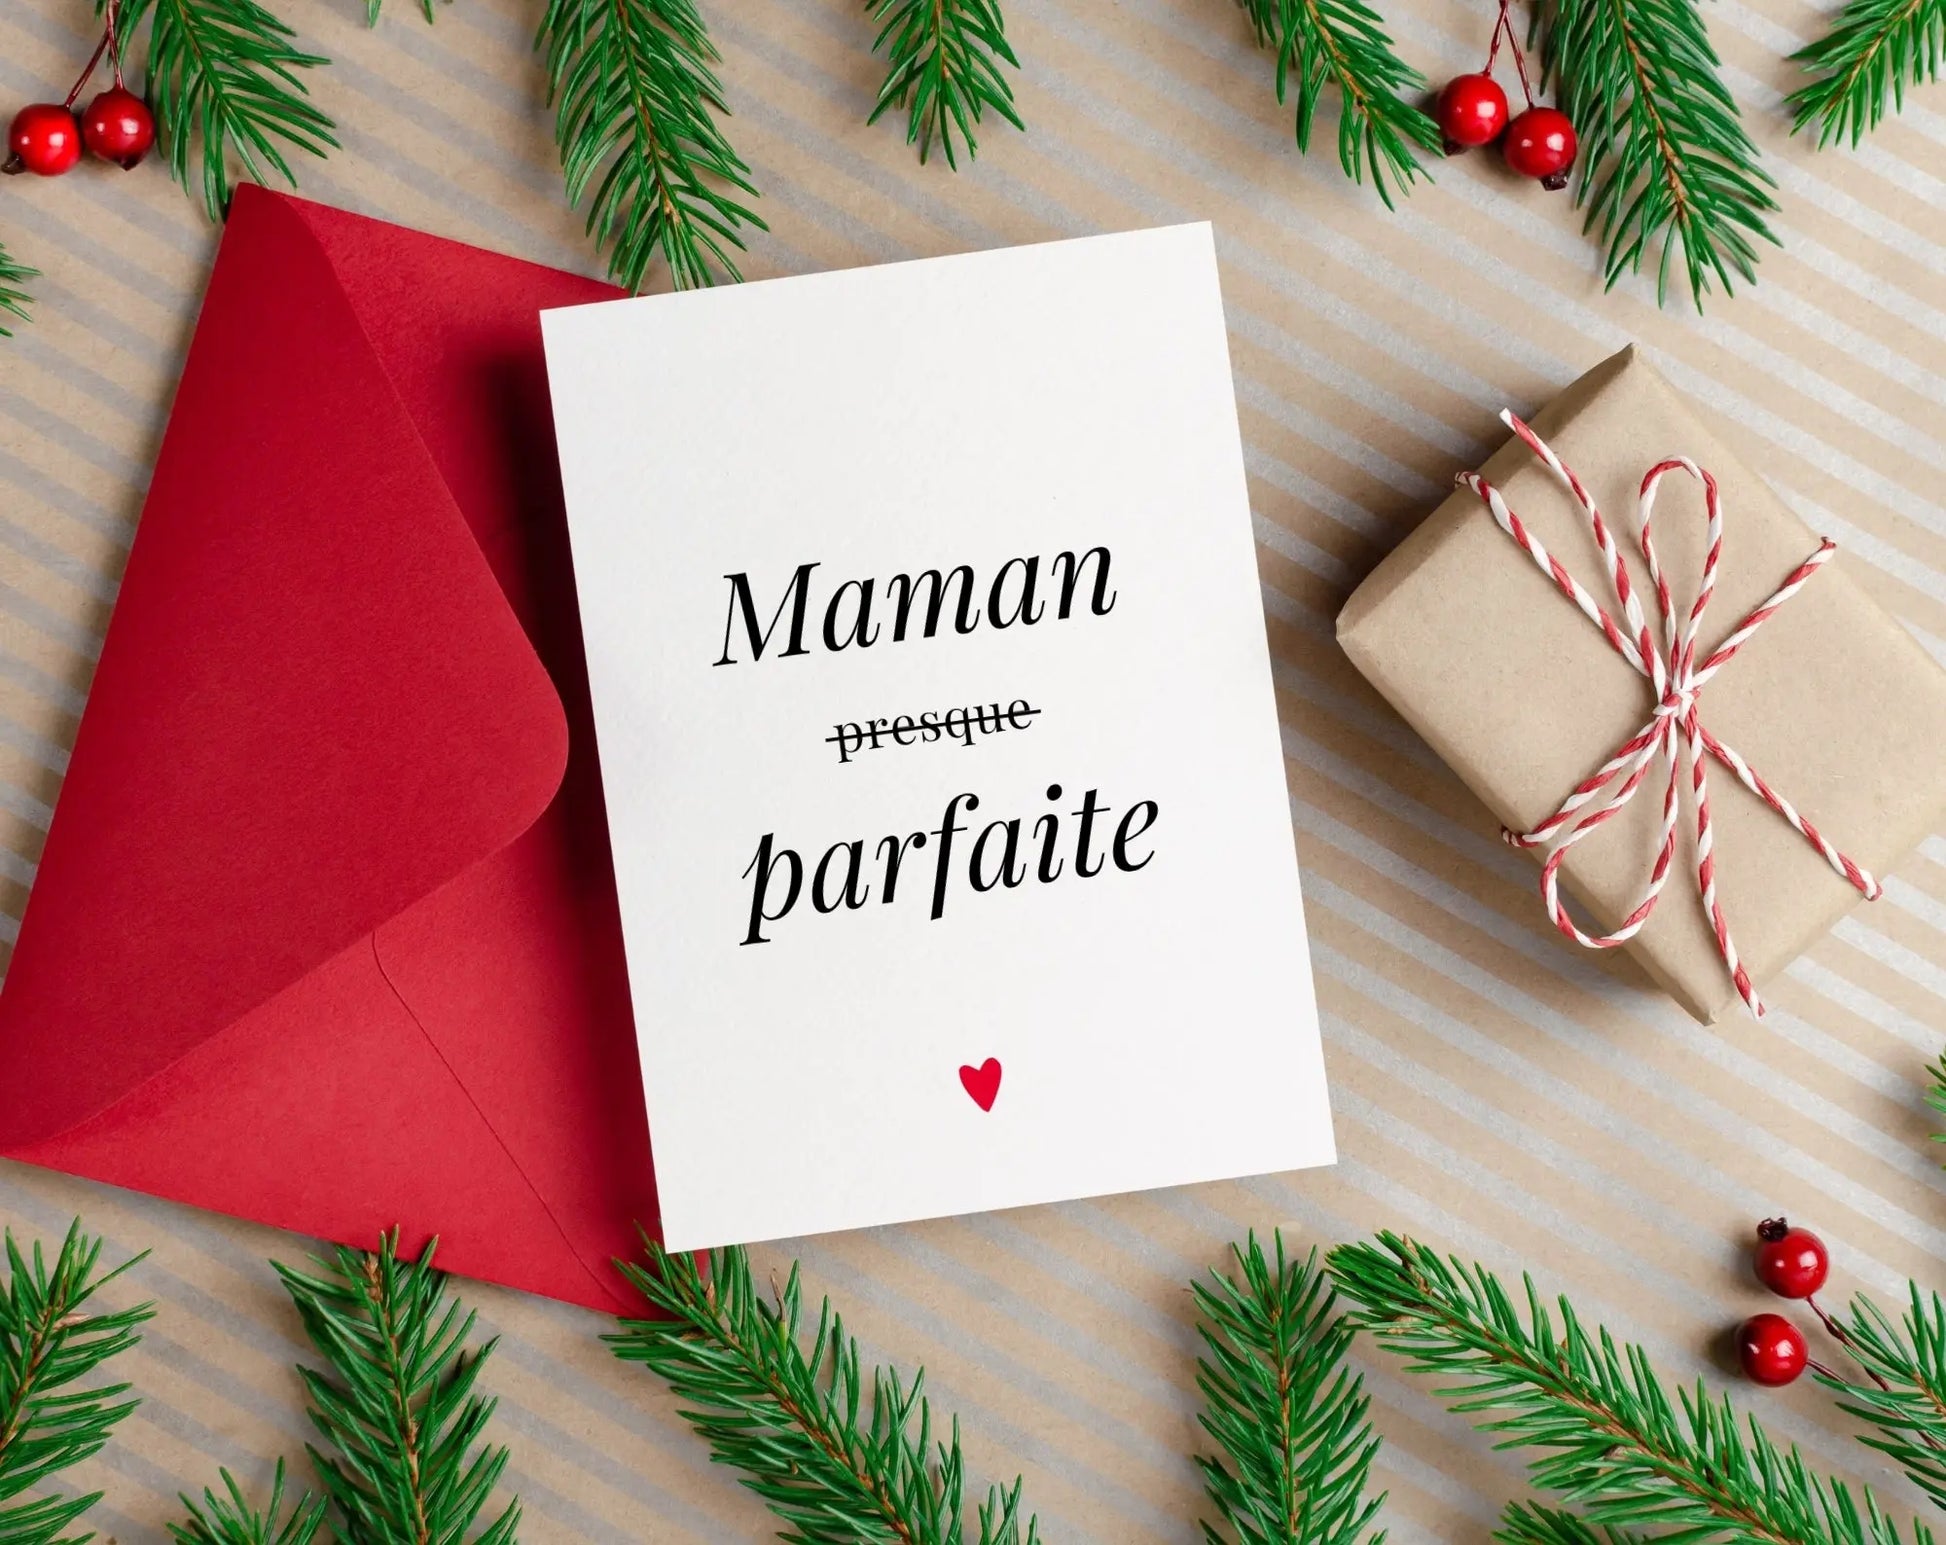 Affiche Maman presque parfaite - Cadeau fête des mères FLTMfrance